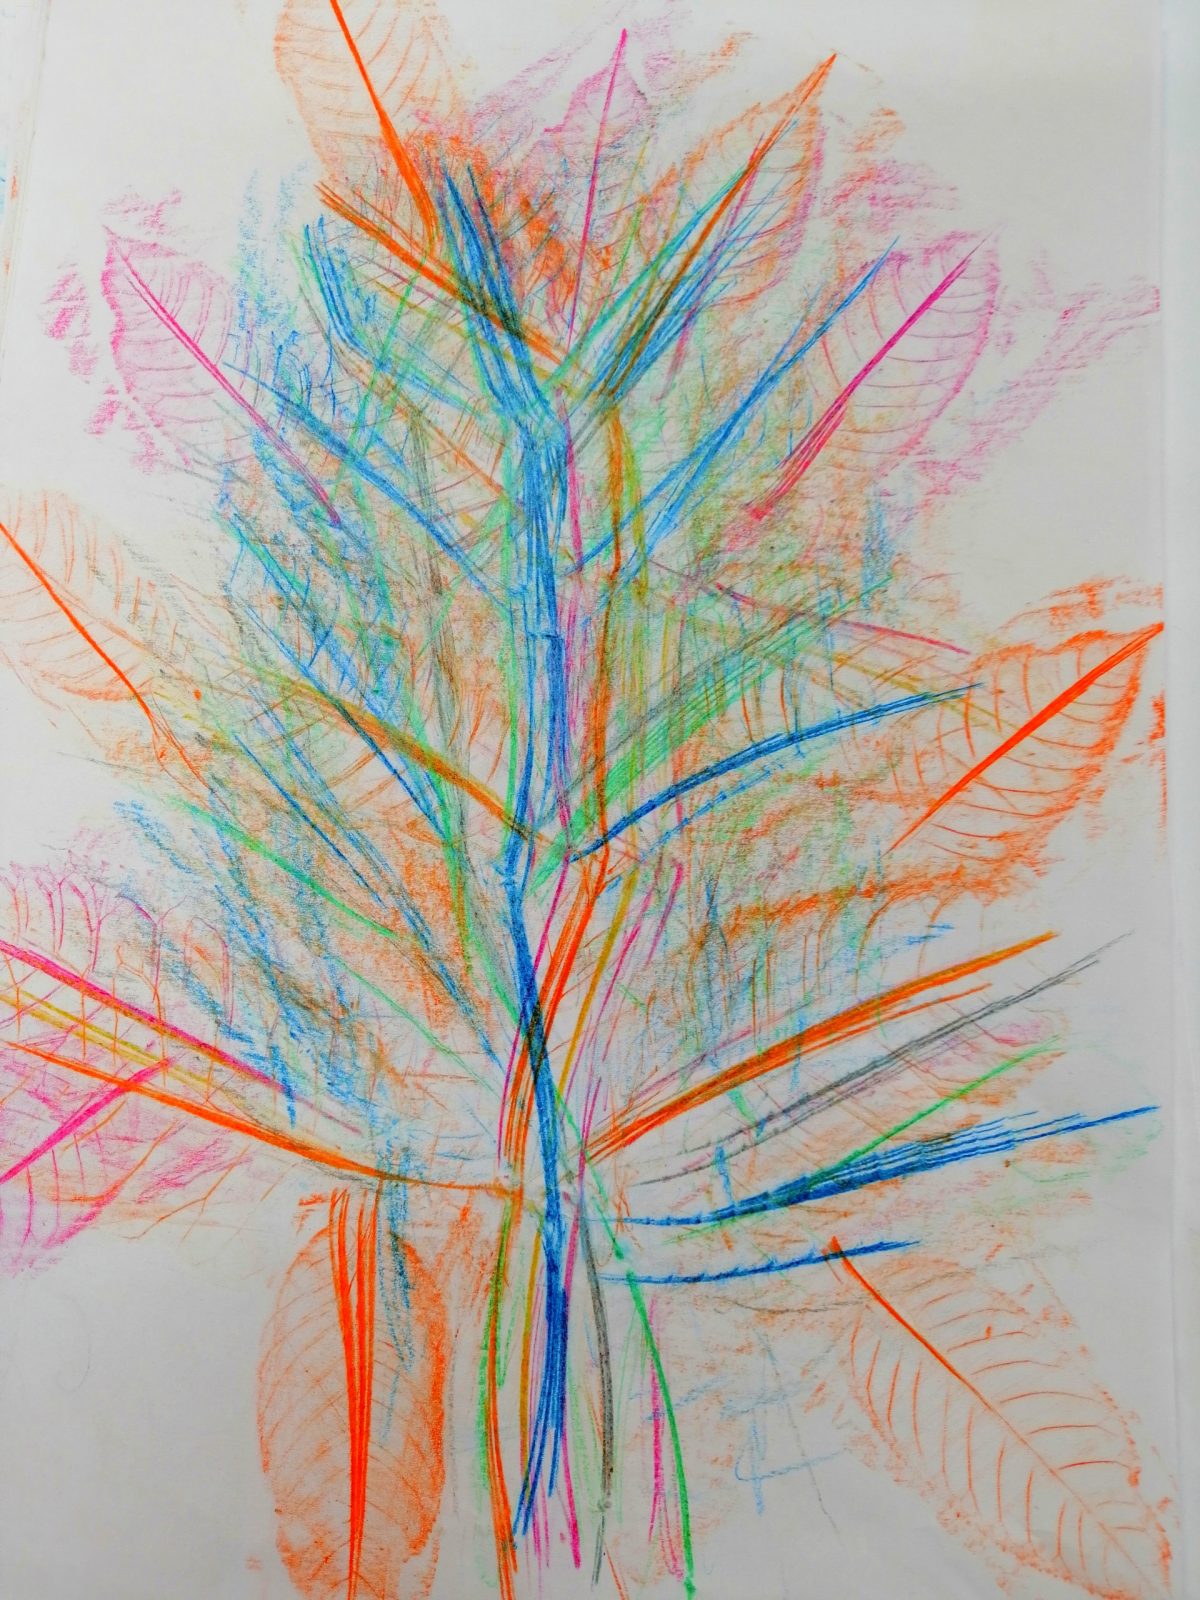 Kompozycja plastyczna struktur jesiennych liści w układzie abstrakcyjnym- centralnym. Praca wykonana w technice frotażu z użyciem barw ciepłych i zimnych.